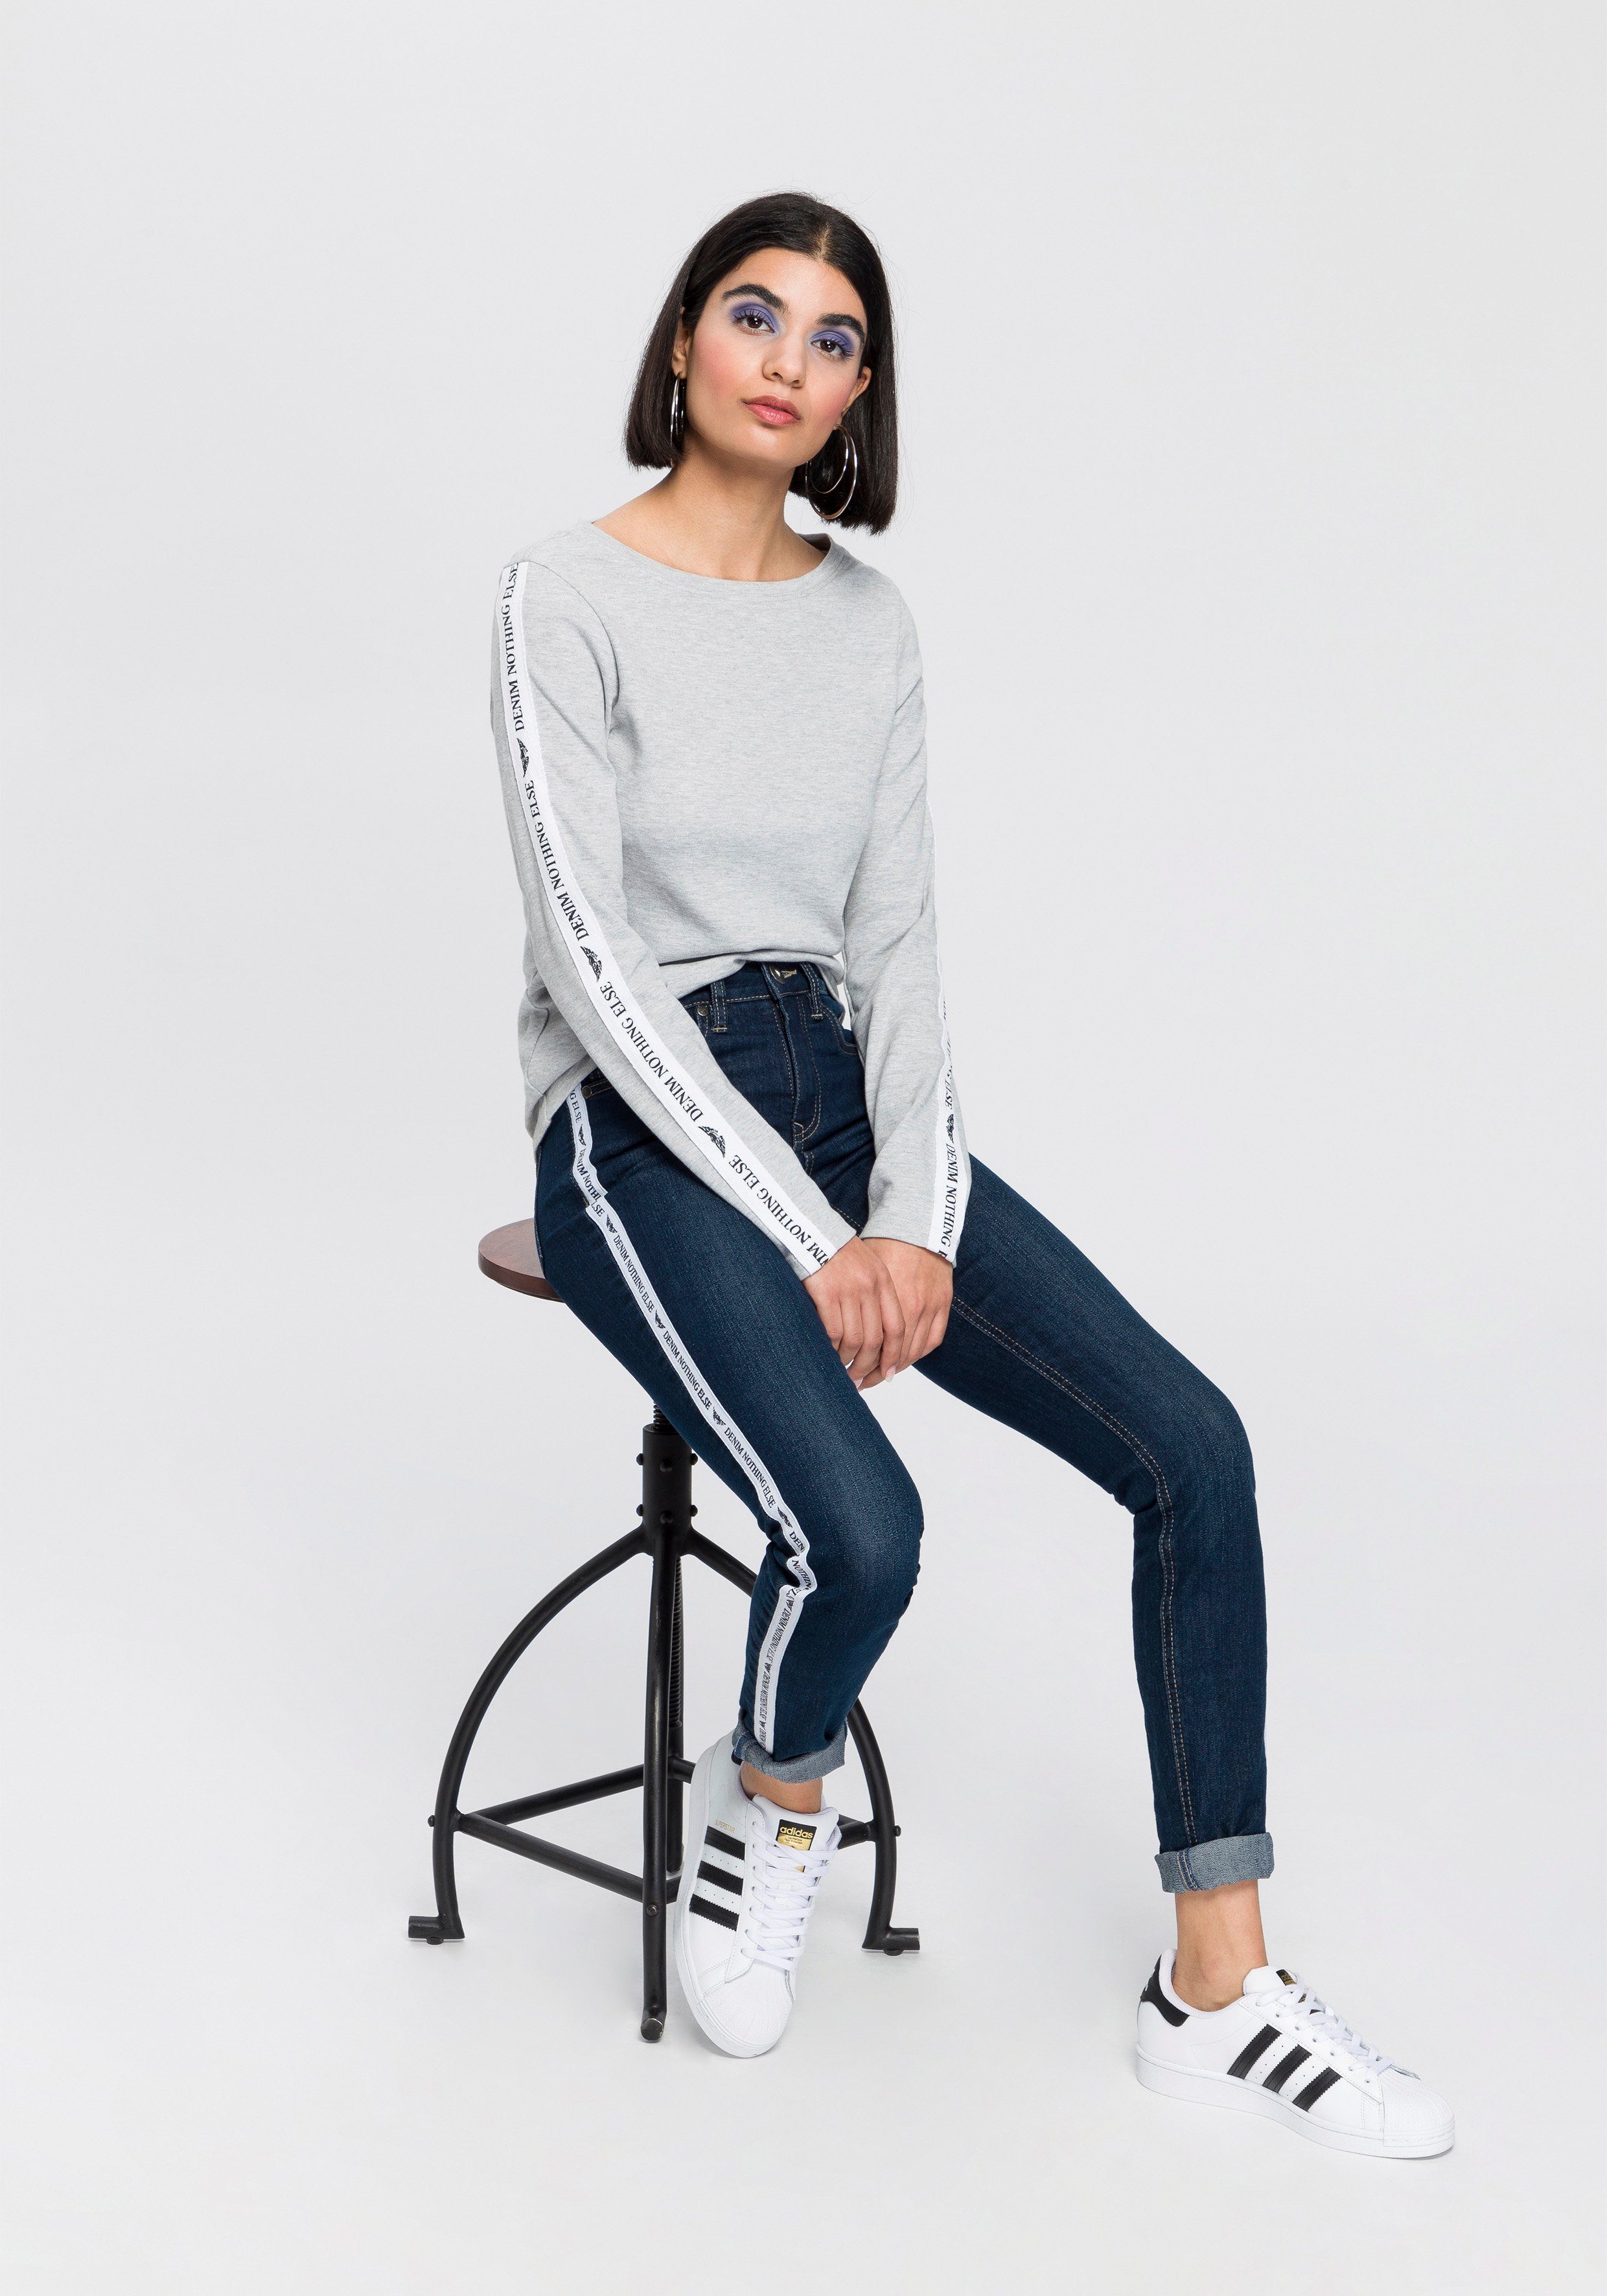 Arizona Slim-fit-Jeans High Waist coolem Seitenstreifen mit